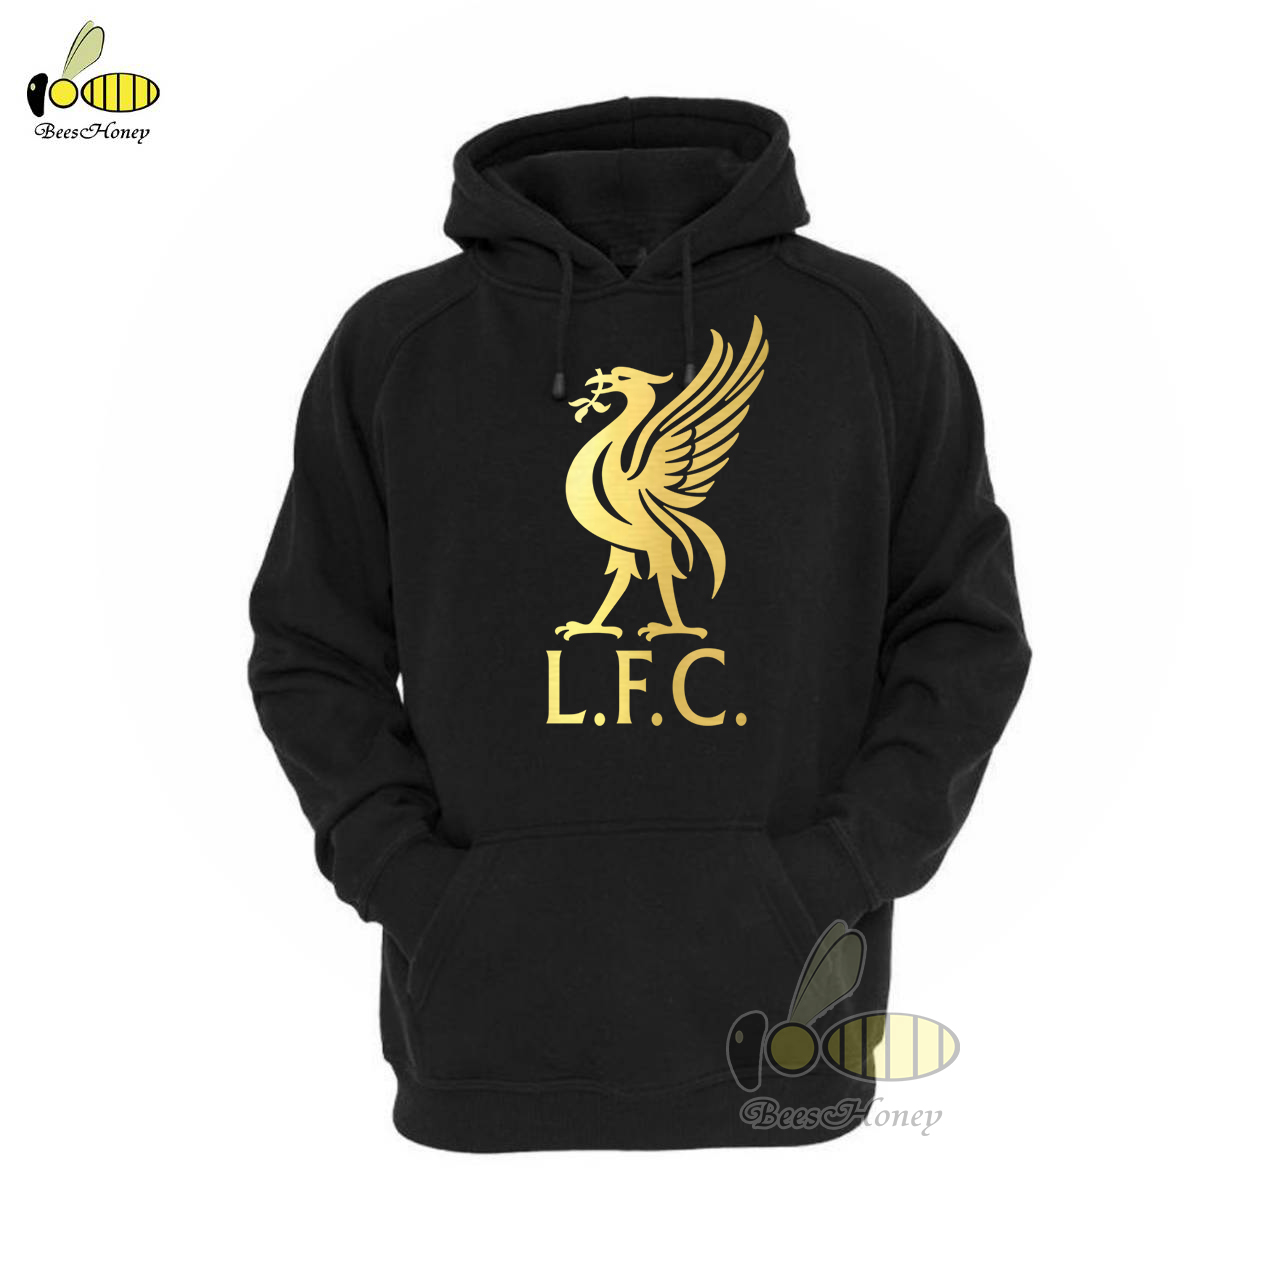 เสื้อฮู้ด Liverpool LFC ลิเวอร์พูล ฟรีไซส์ ผ้าดี ฮู้ดซิป เสื้อกันหนาว งานดีแน่นอน หนานุ่มใส่สบาย Hoodie สกรีนเฟล็ก PU